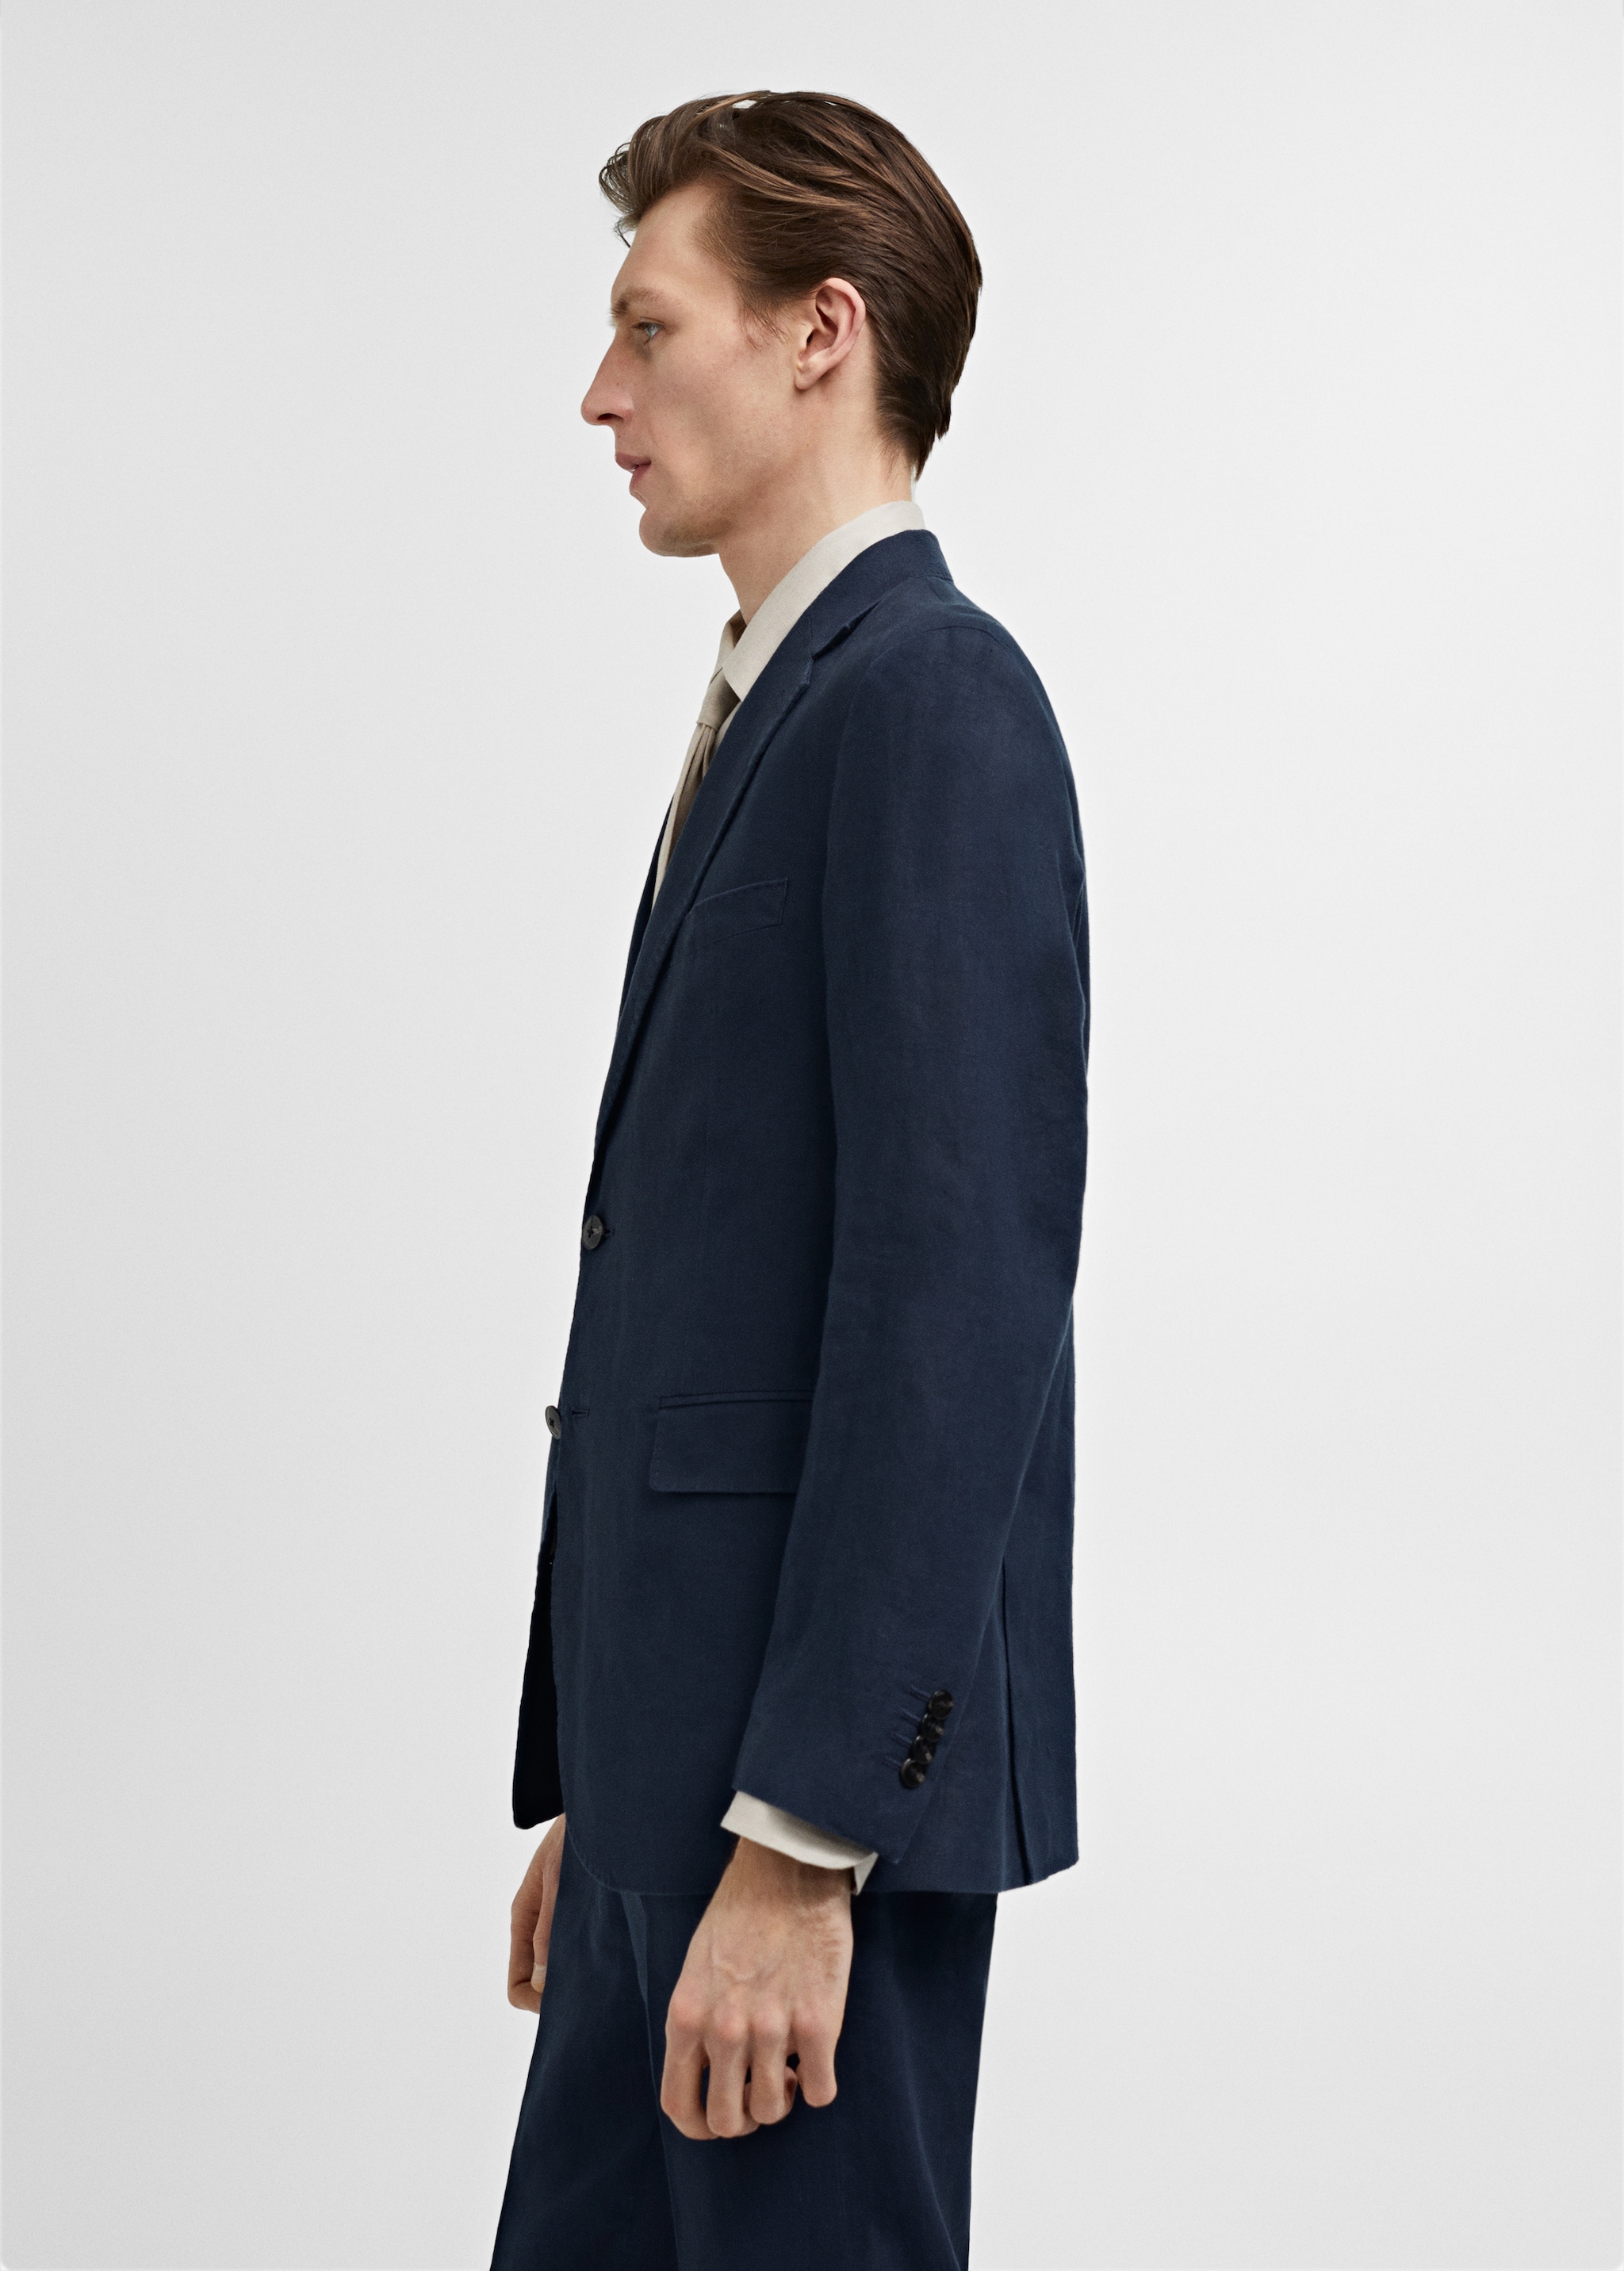 100% linen slim-fit suit jacket - Details of the article 2